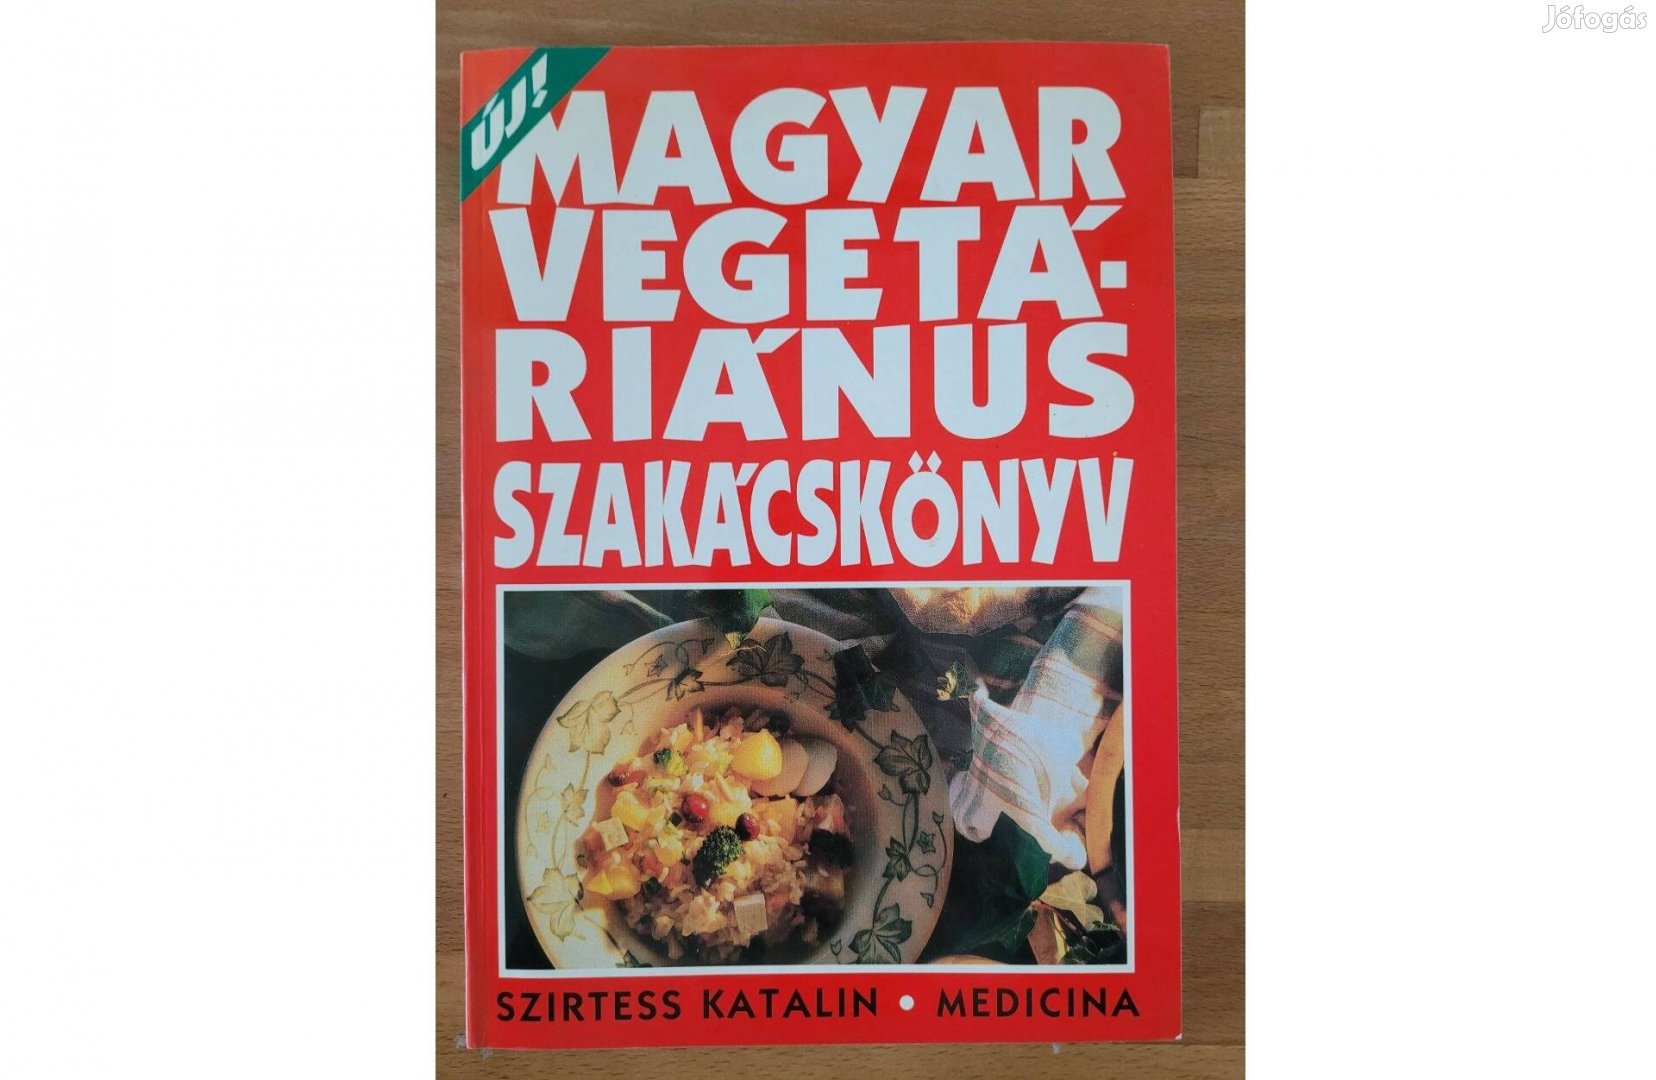 Szirtess Katalin - Magyar Vegetáriánus Szakácskönyv (Medicina 1994)